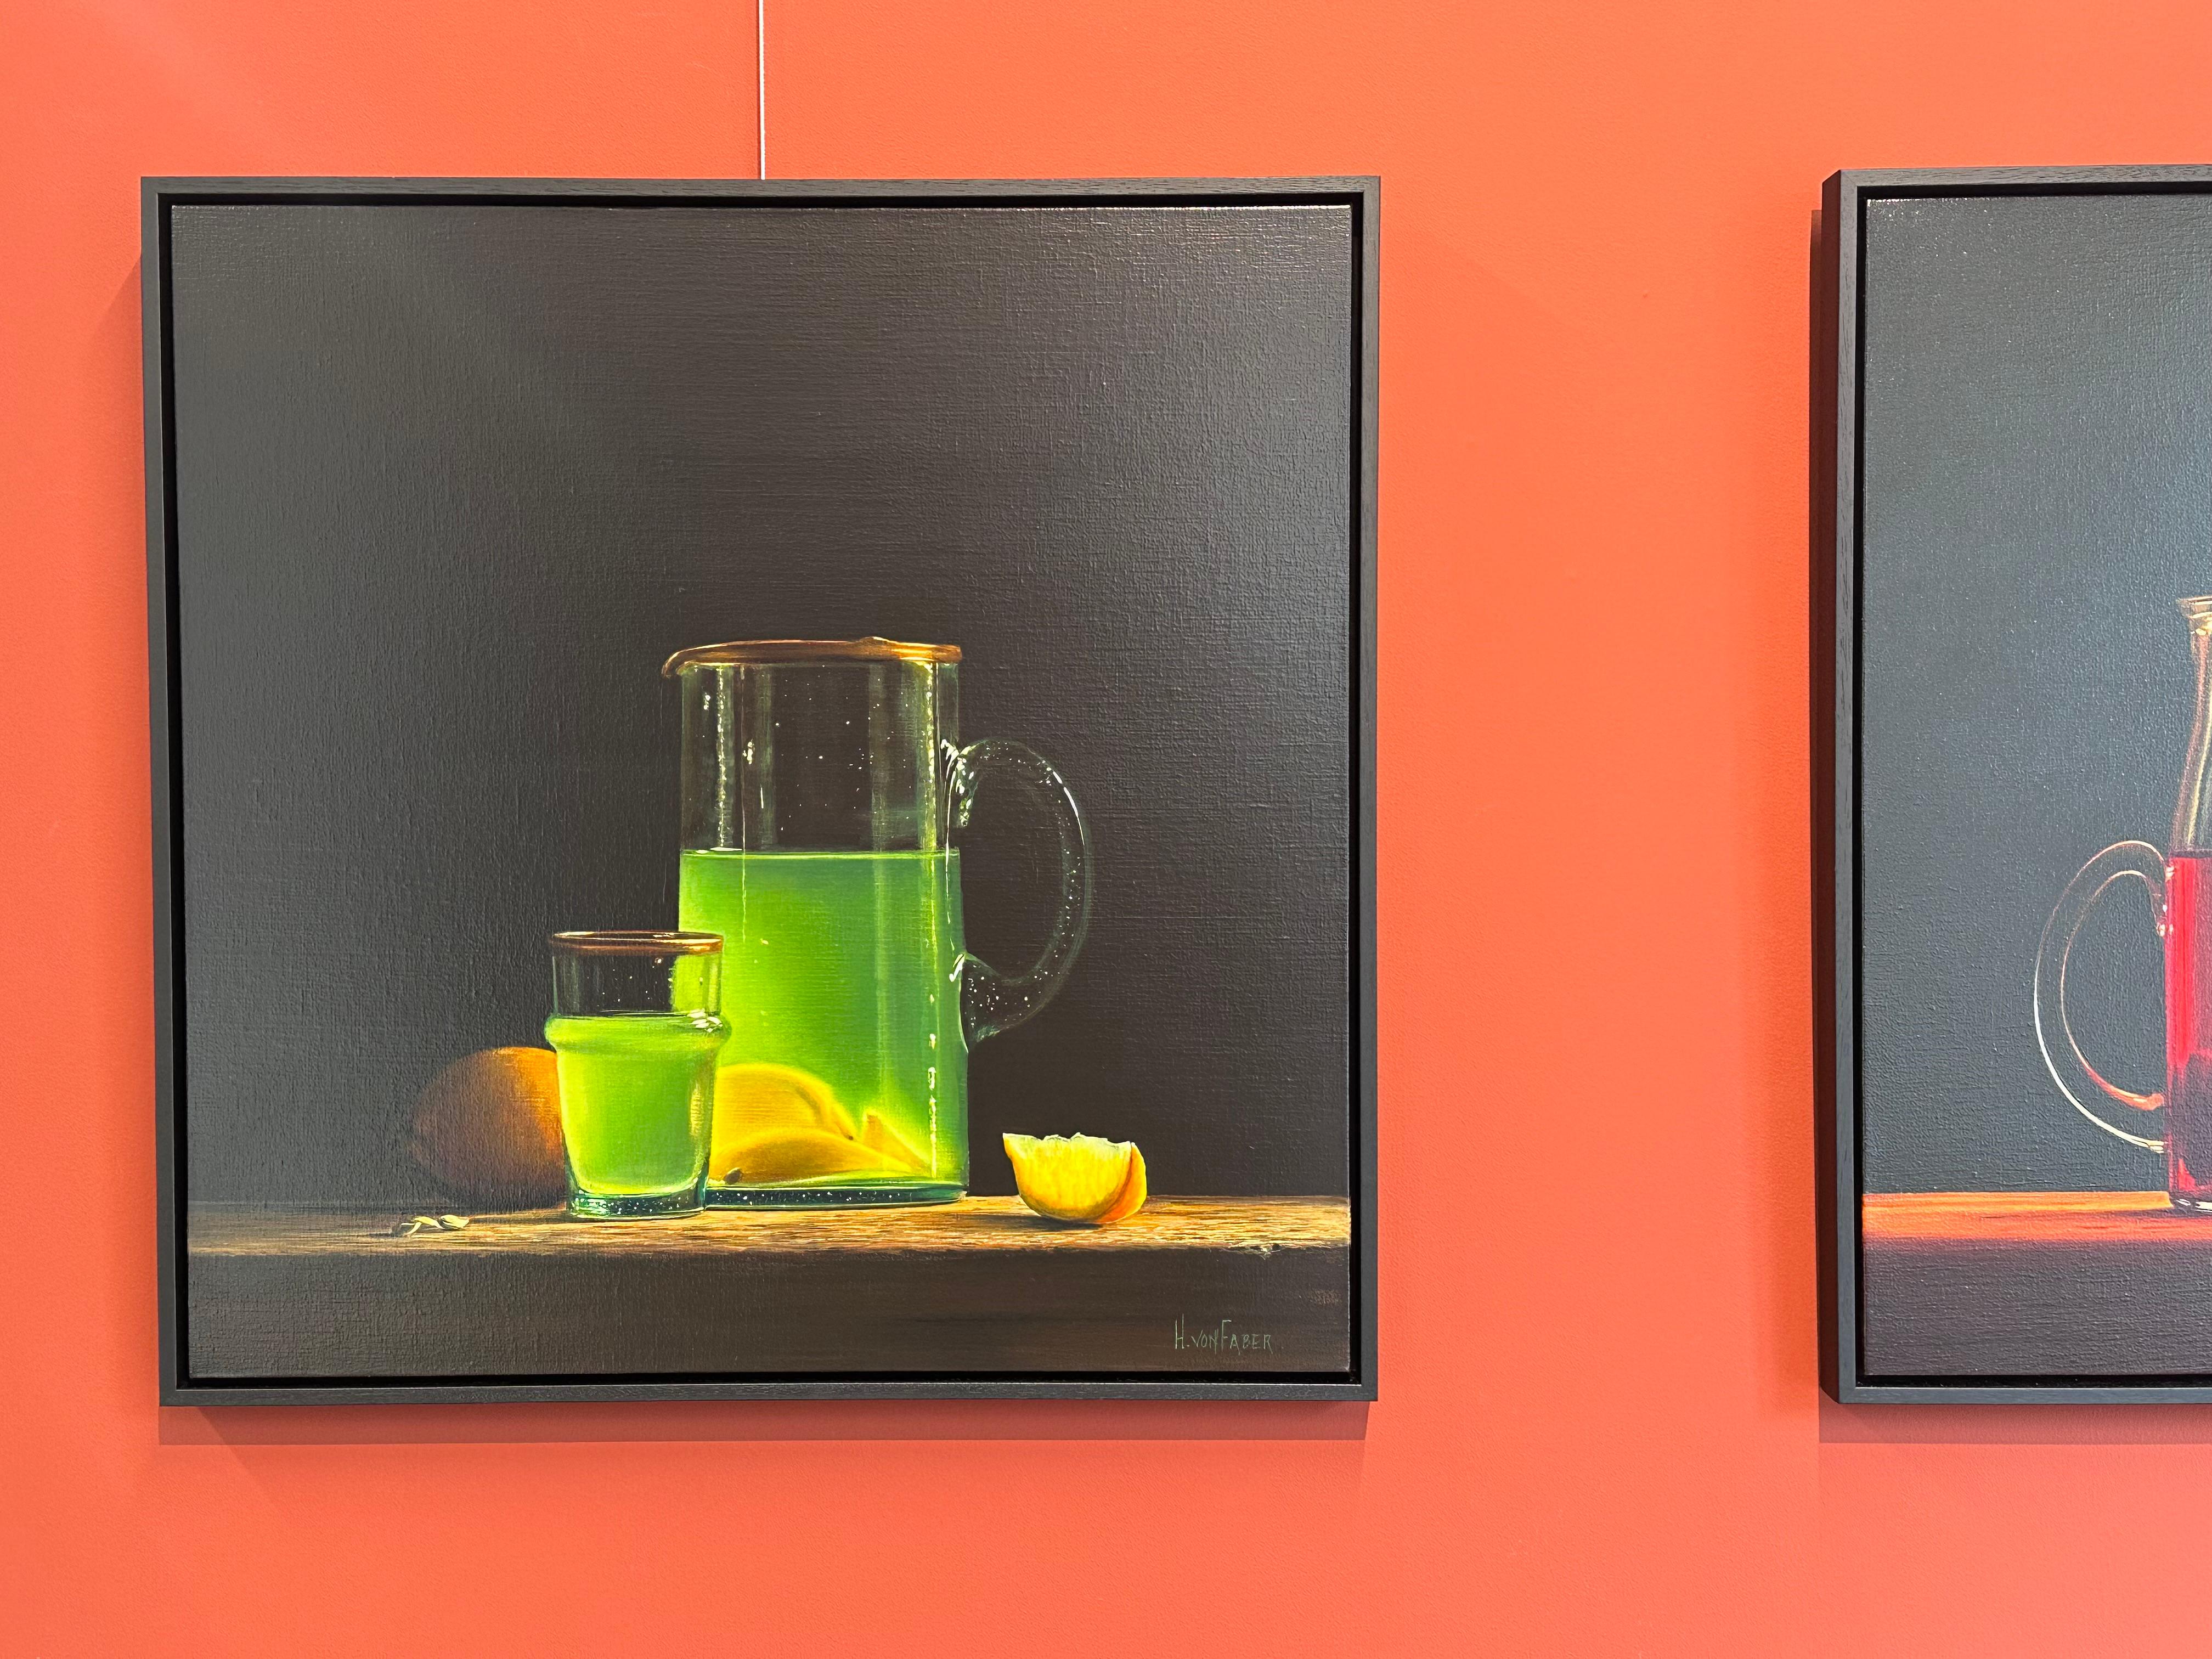 Limonade - Nature morte hollandaise du 21e siècle de limonade  & Citrons - Contemporain Painting par Heidi von Faber